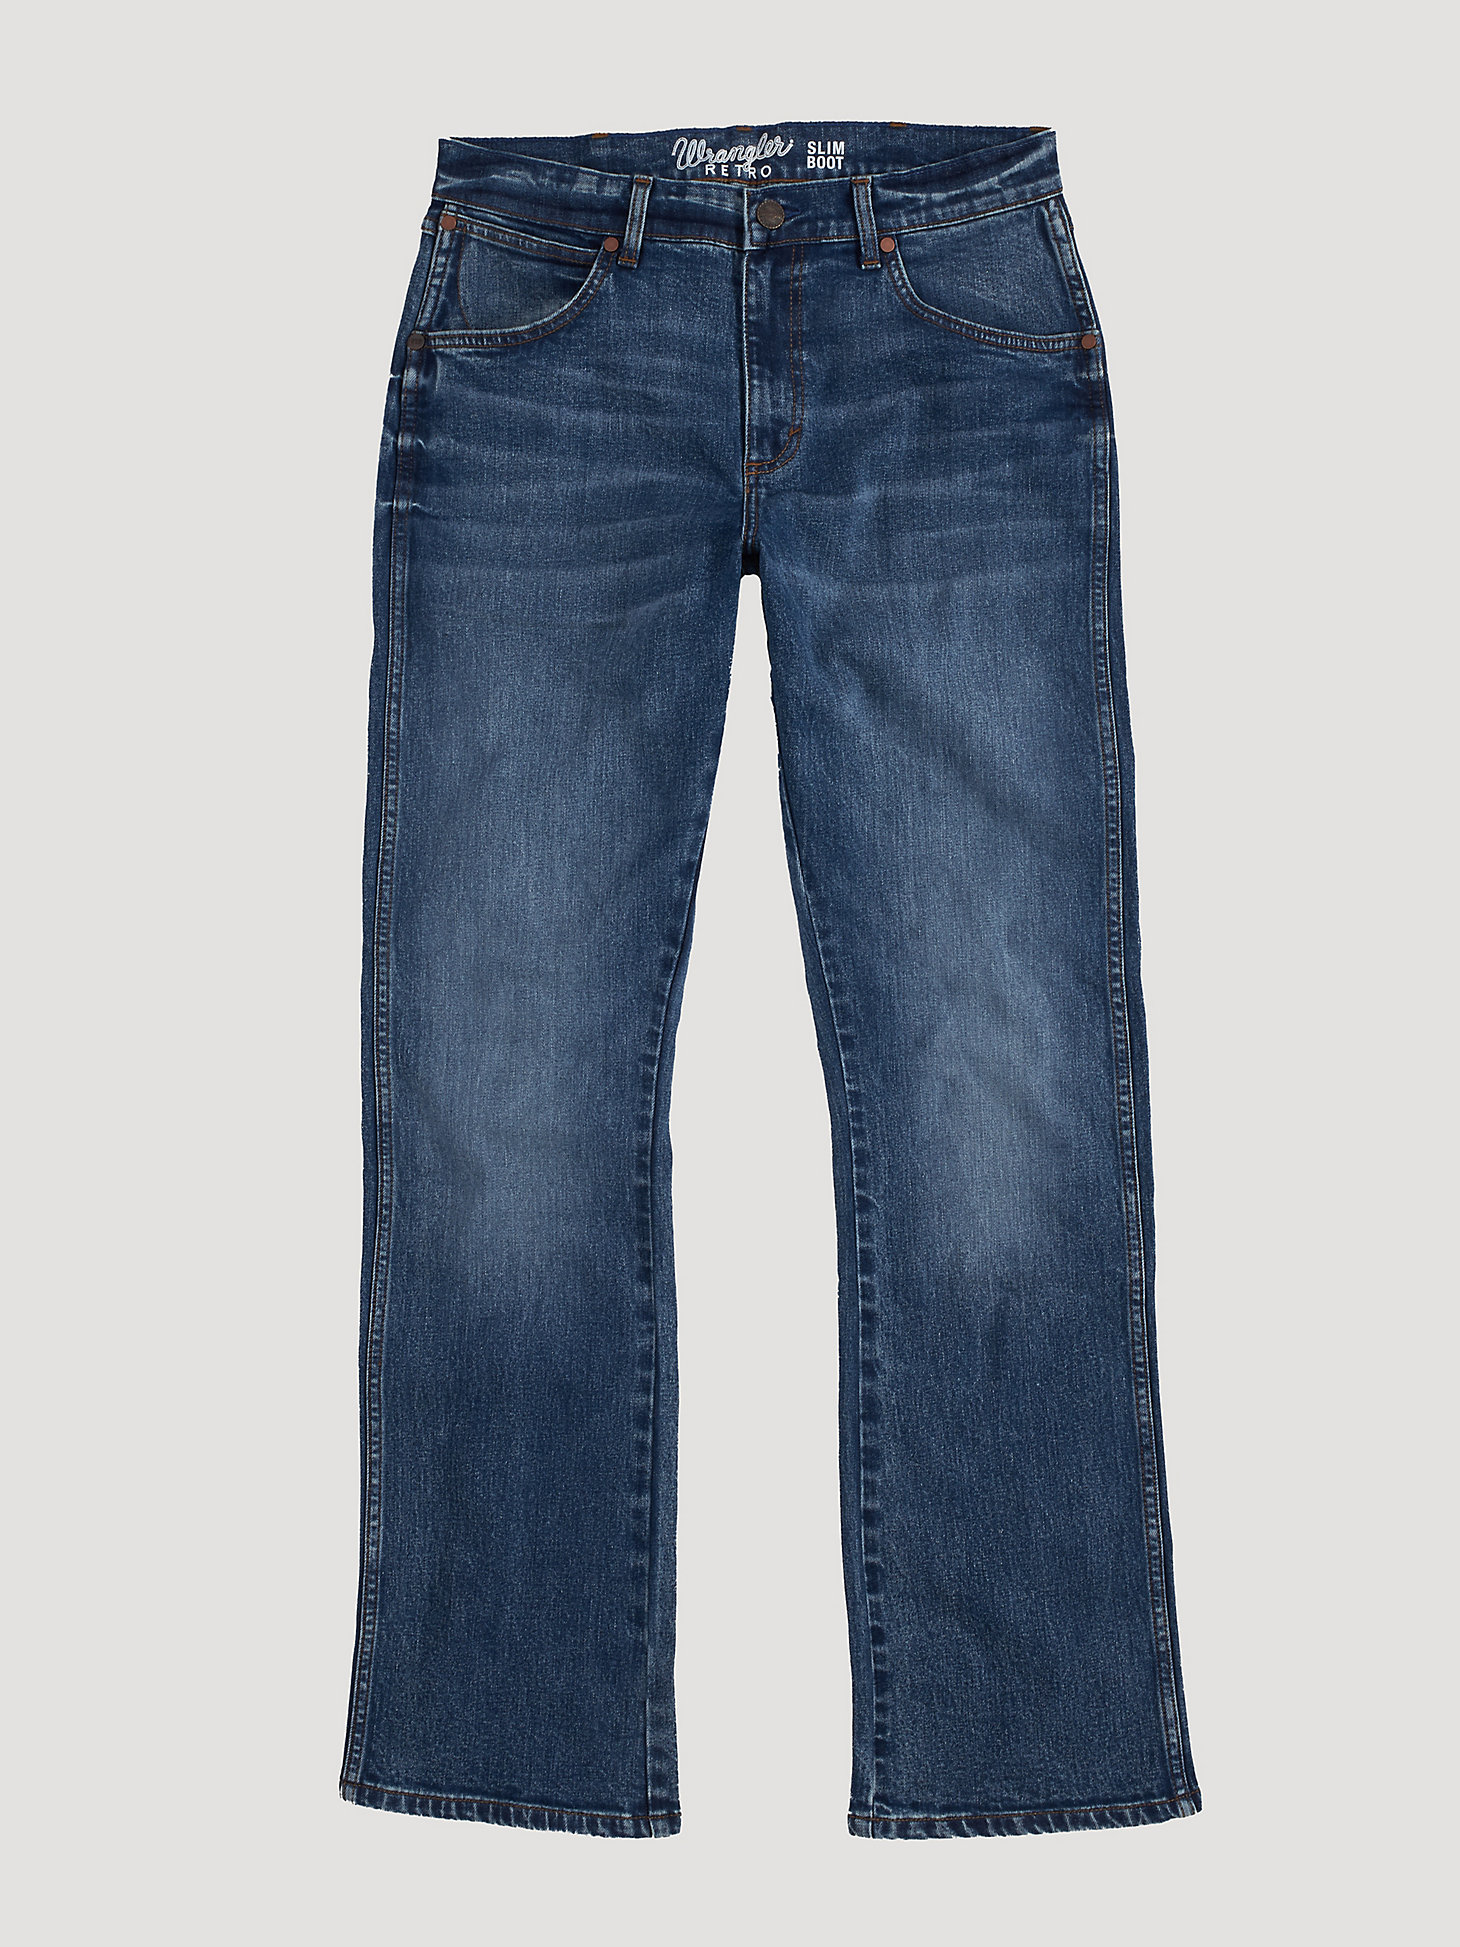 Men's Wrangler Retro® Slim Fit Bootcut Jean in Mile Post alternative view 6